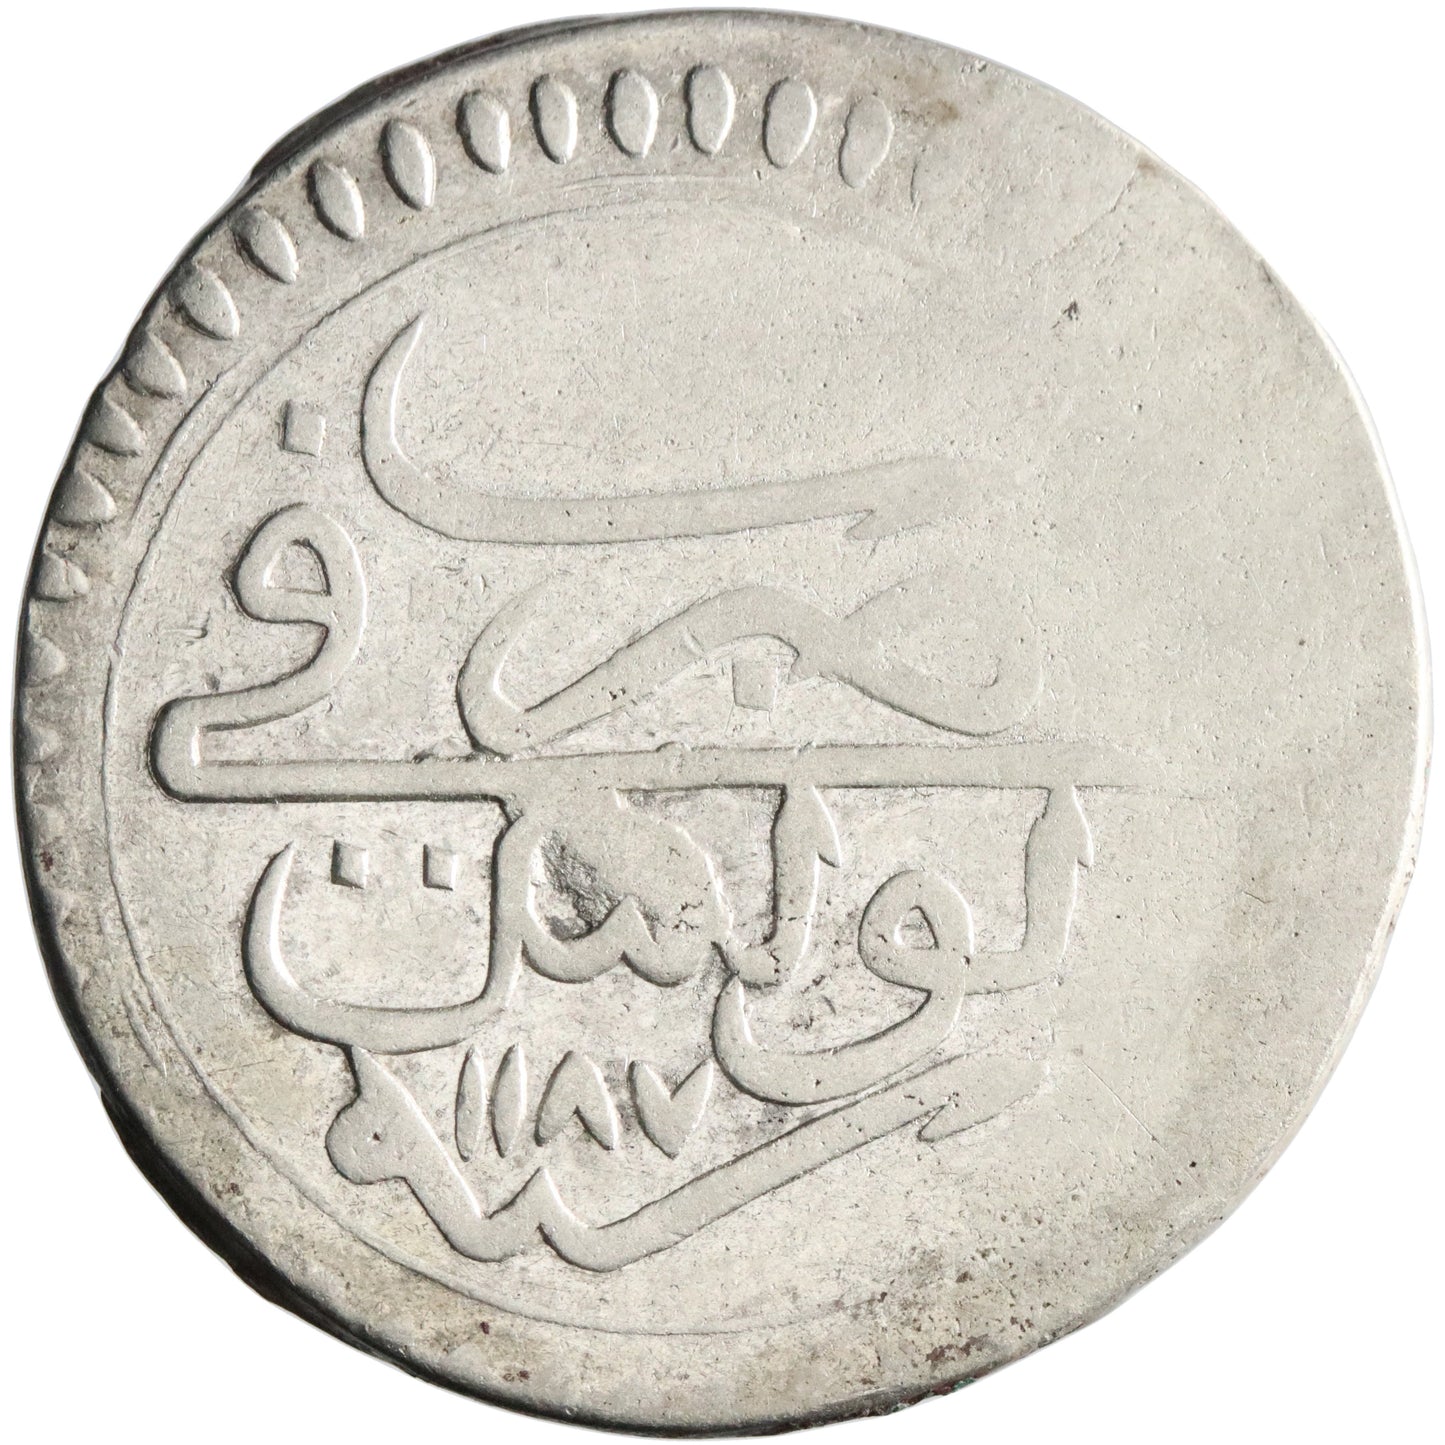 Ottoman, Mustafa III, silver piastre, Tunis (Tunisia) mint, AH 1187